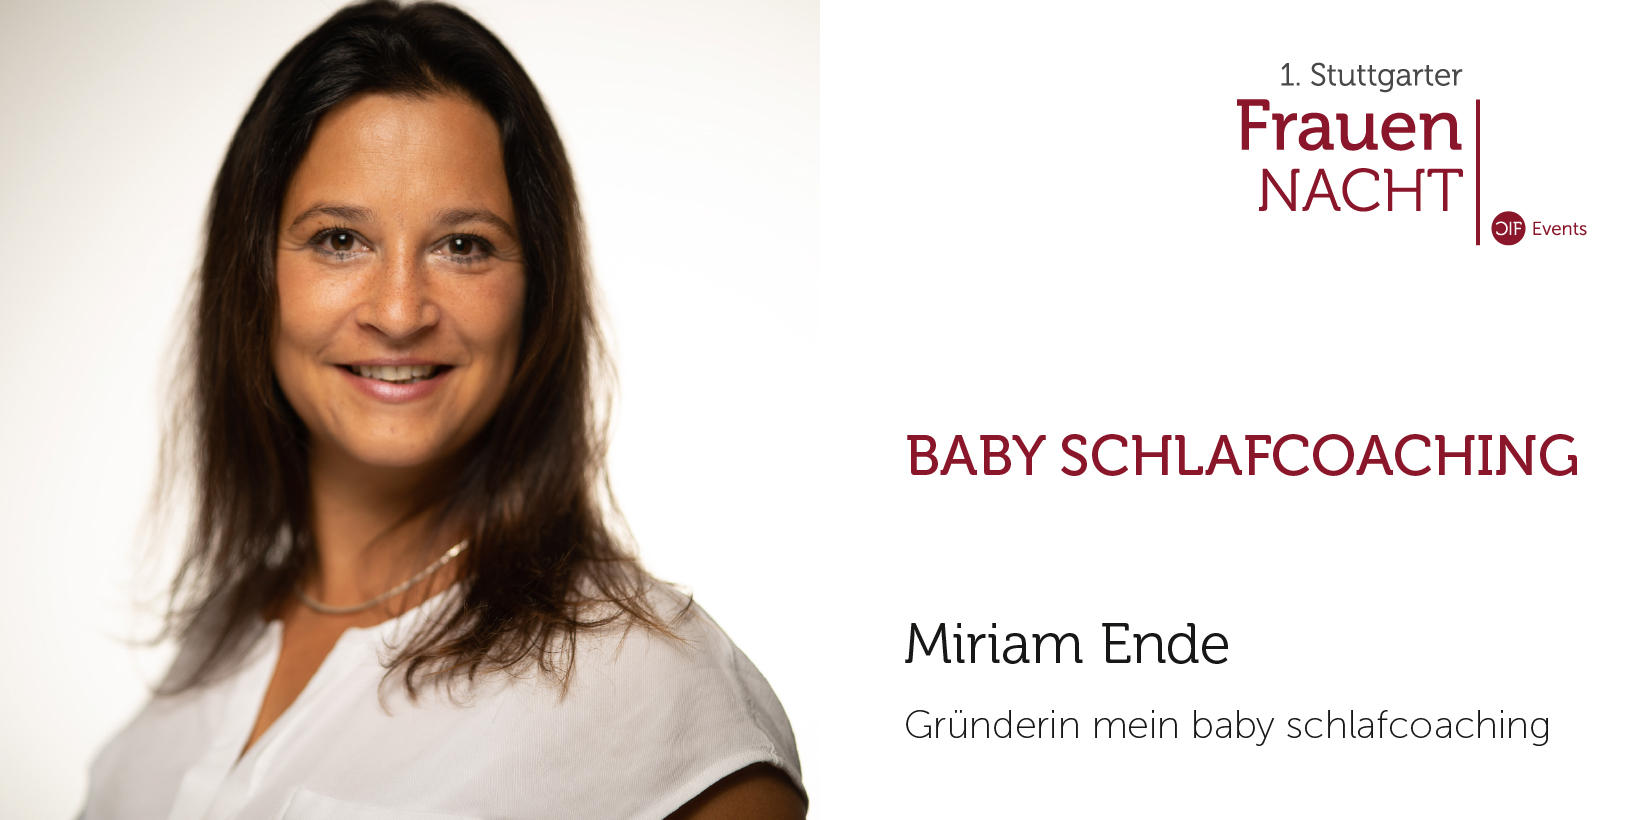 Miriam Ende – 1. Stuttgarter Frauennacht